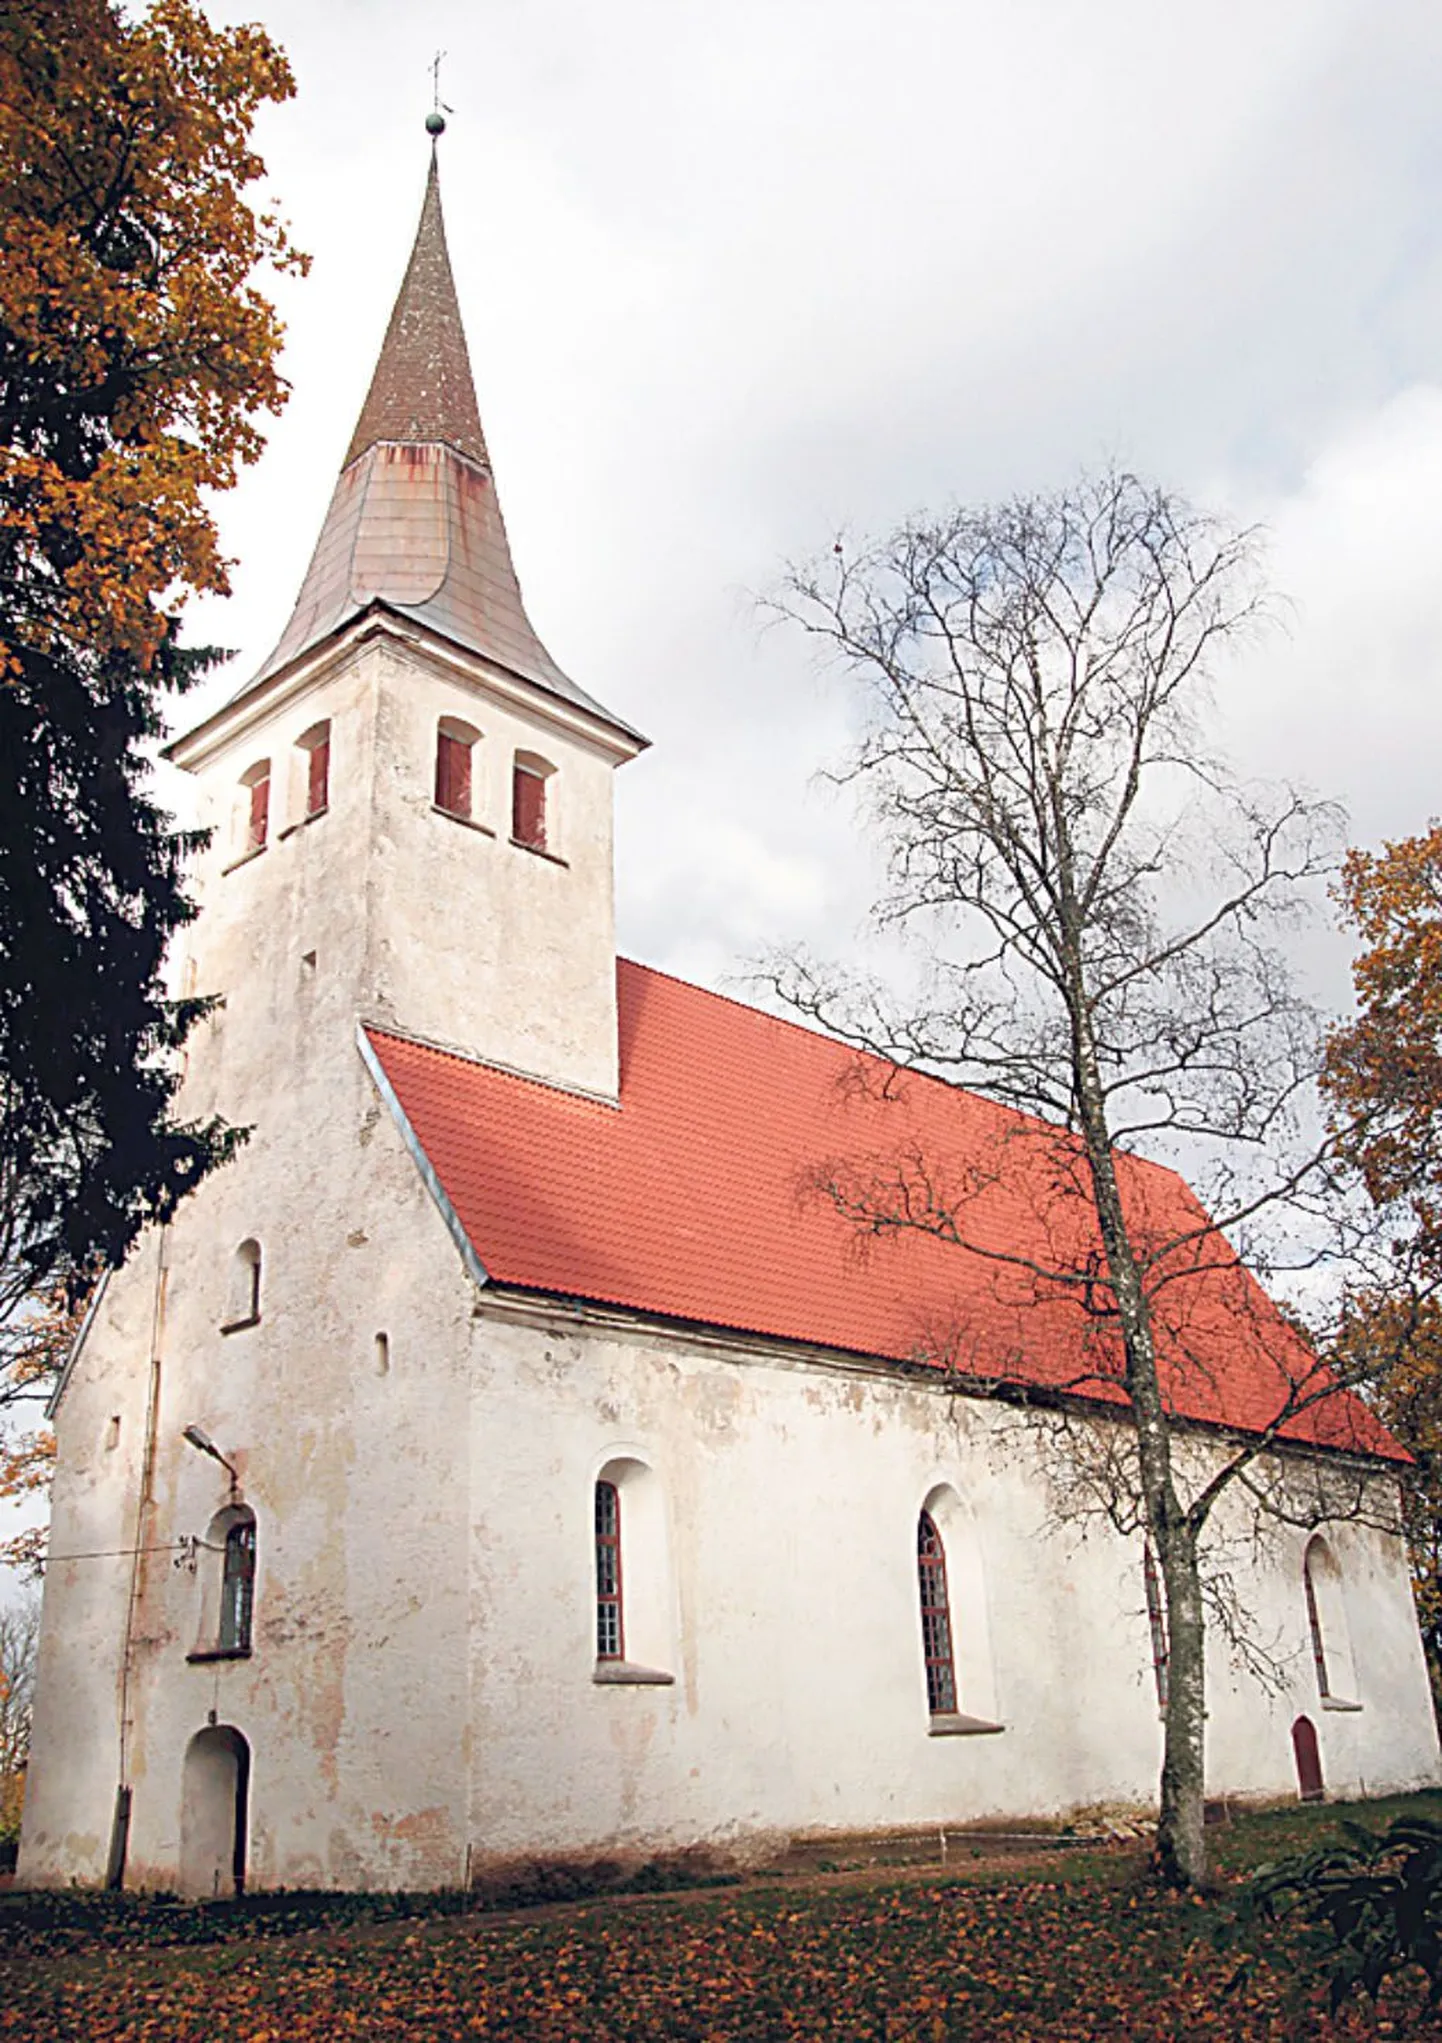 Uue katusega silma rõõmustav Mihkli kirik on üks Lääne-Eesti vanimaid ja omapärasemaid ehitisi.